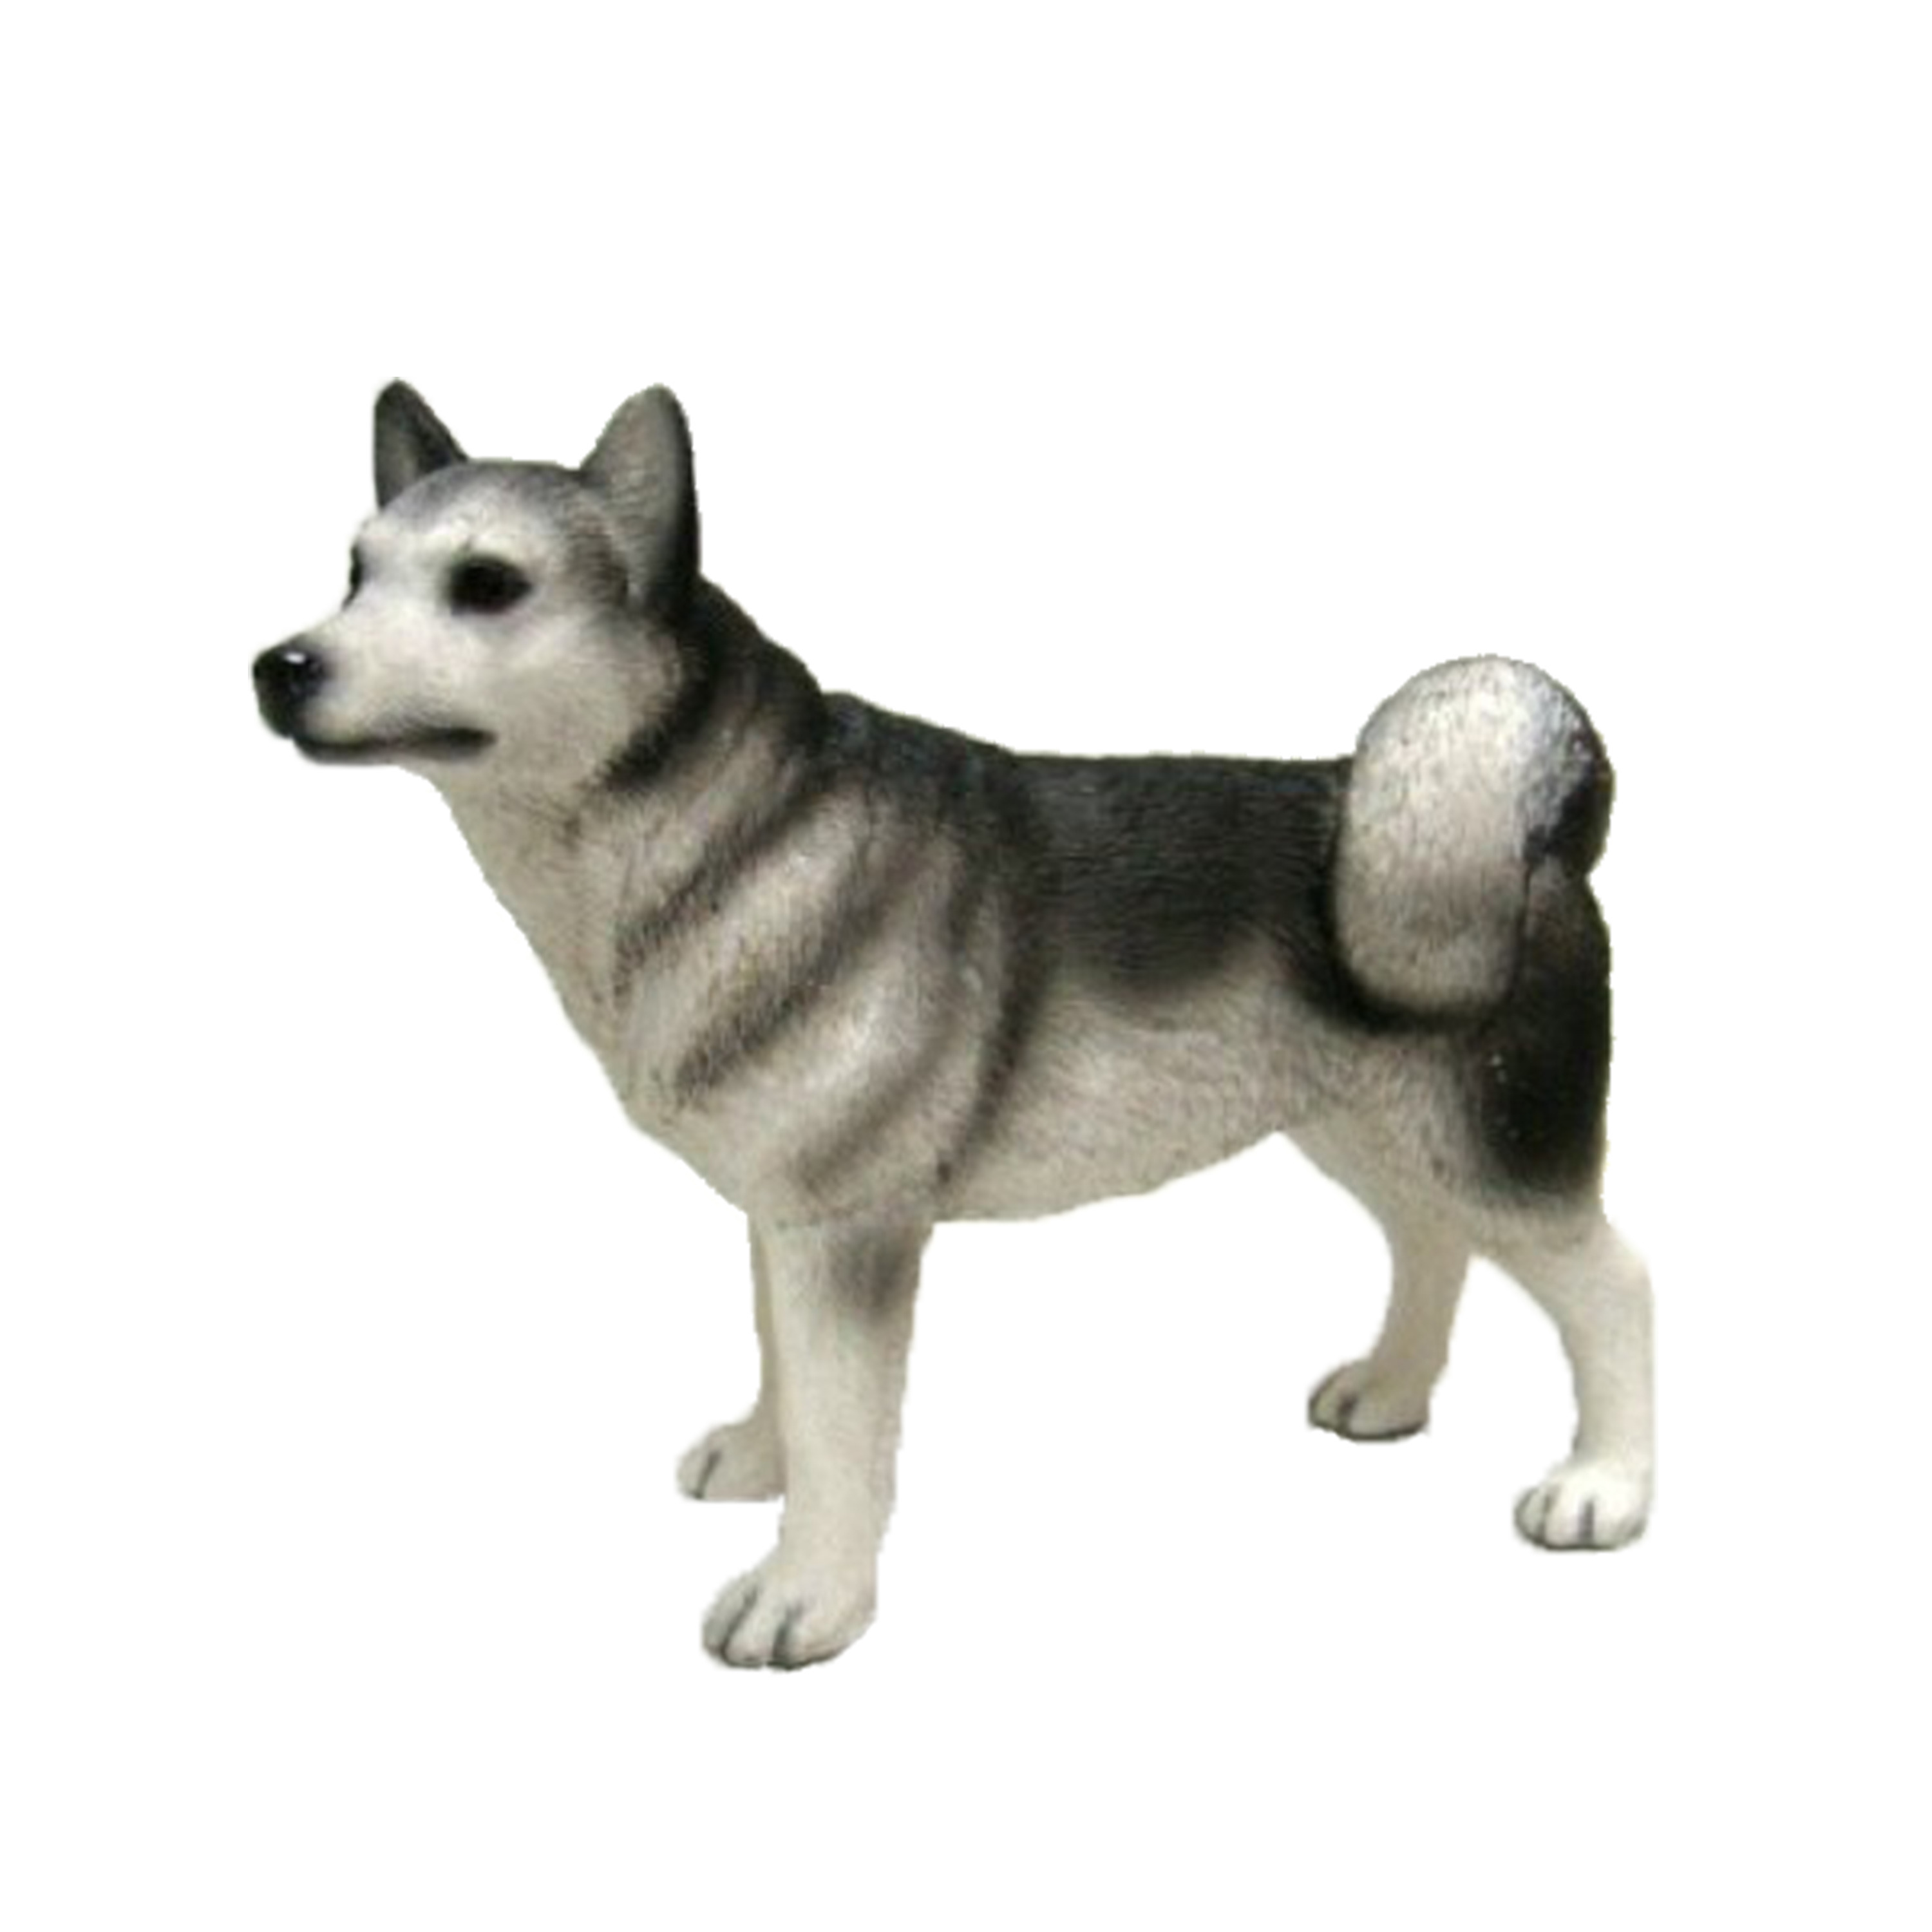 Polystone tuinbeeld Siberische husky hondje 15 cm